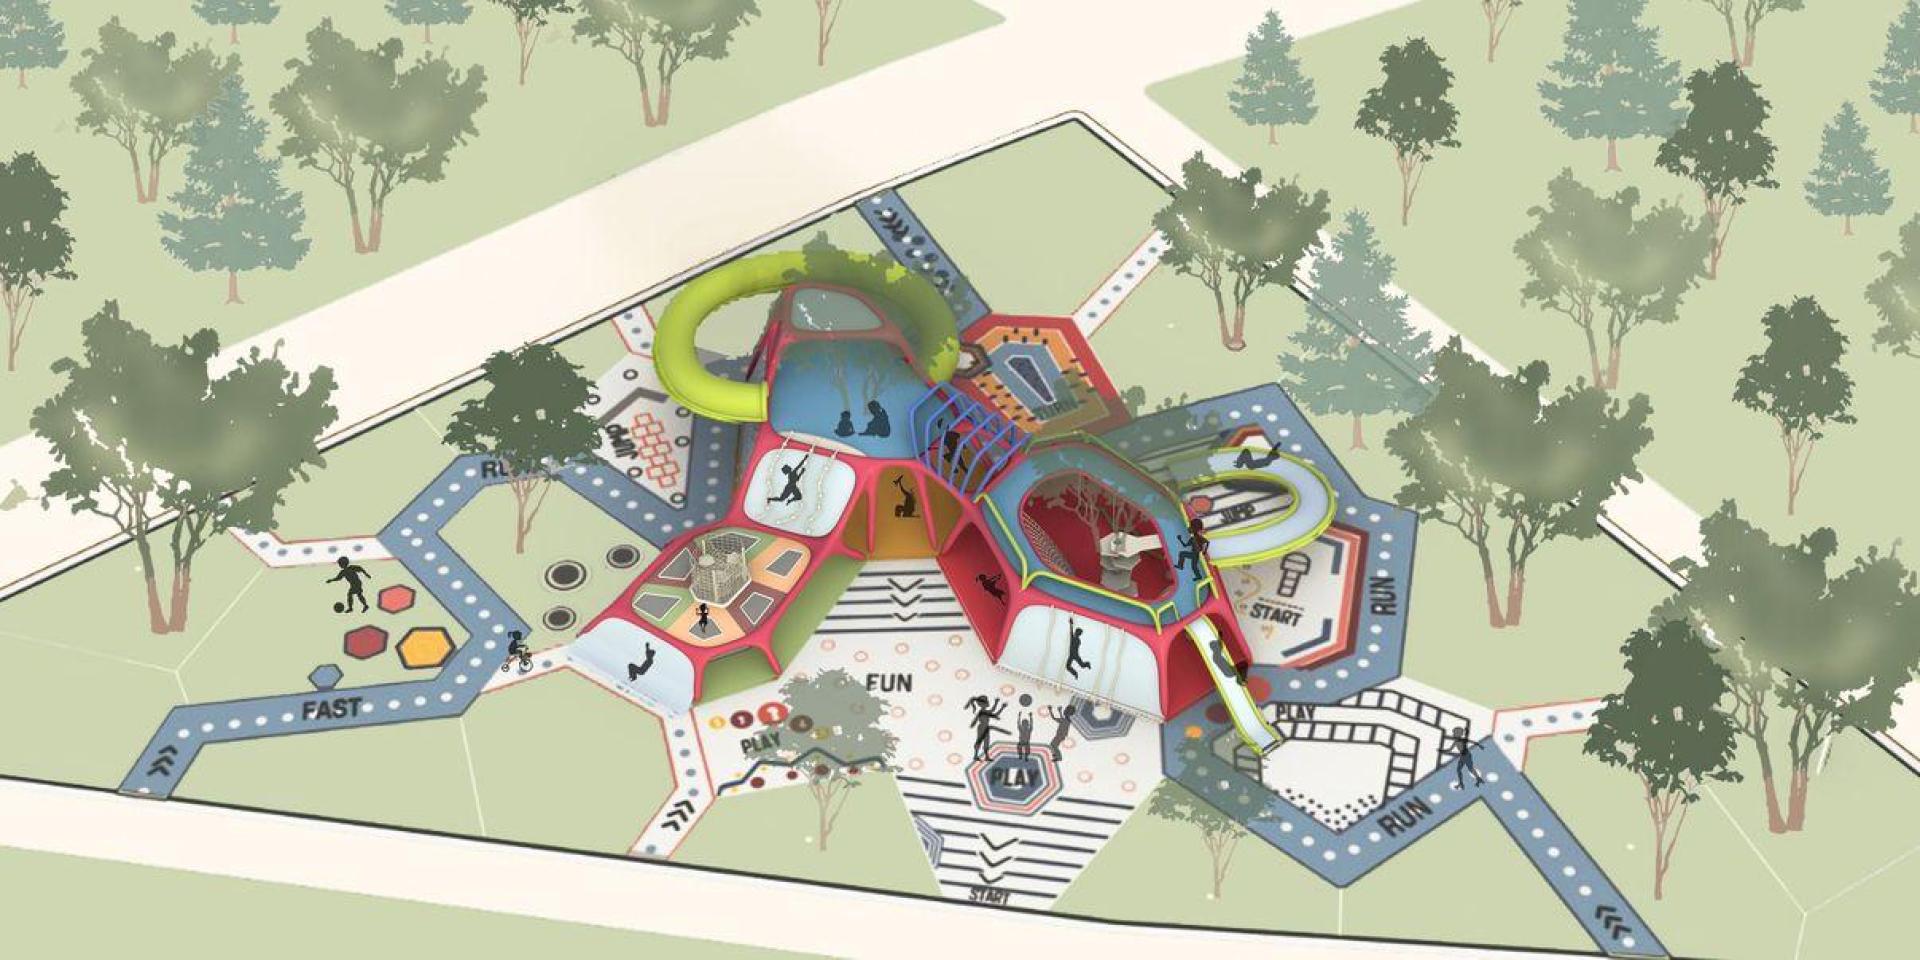 childrens playground design plans